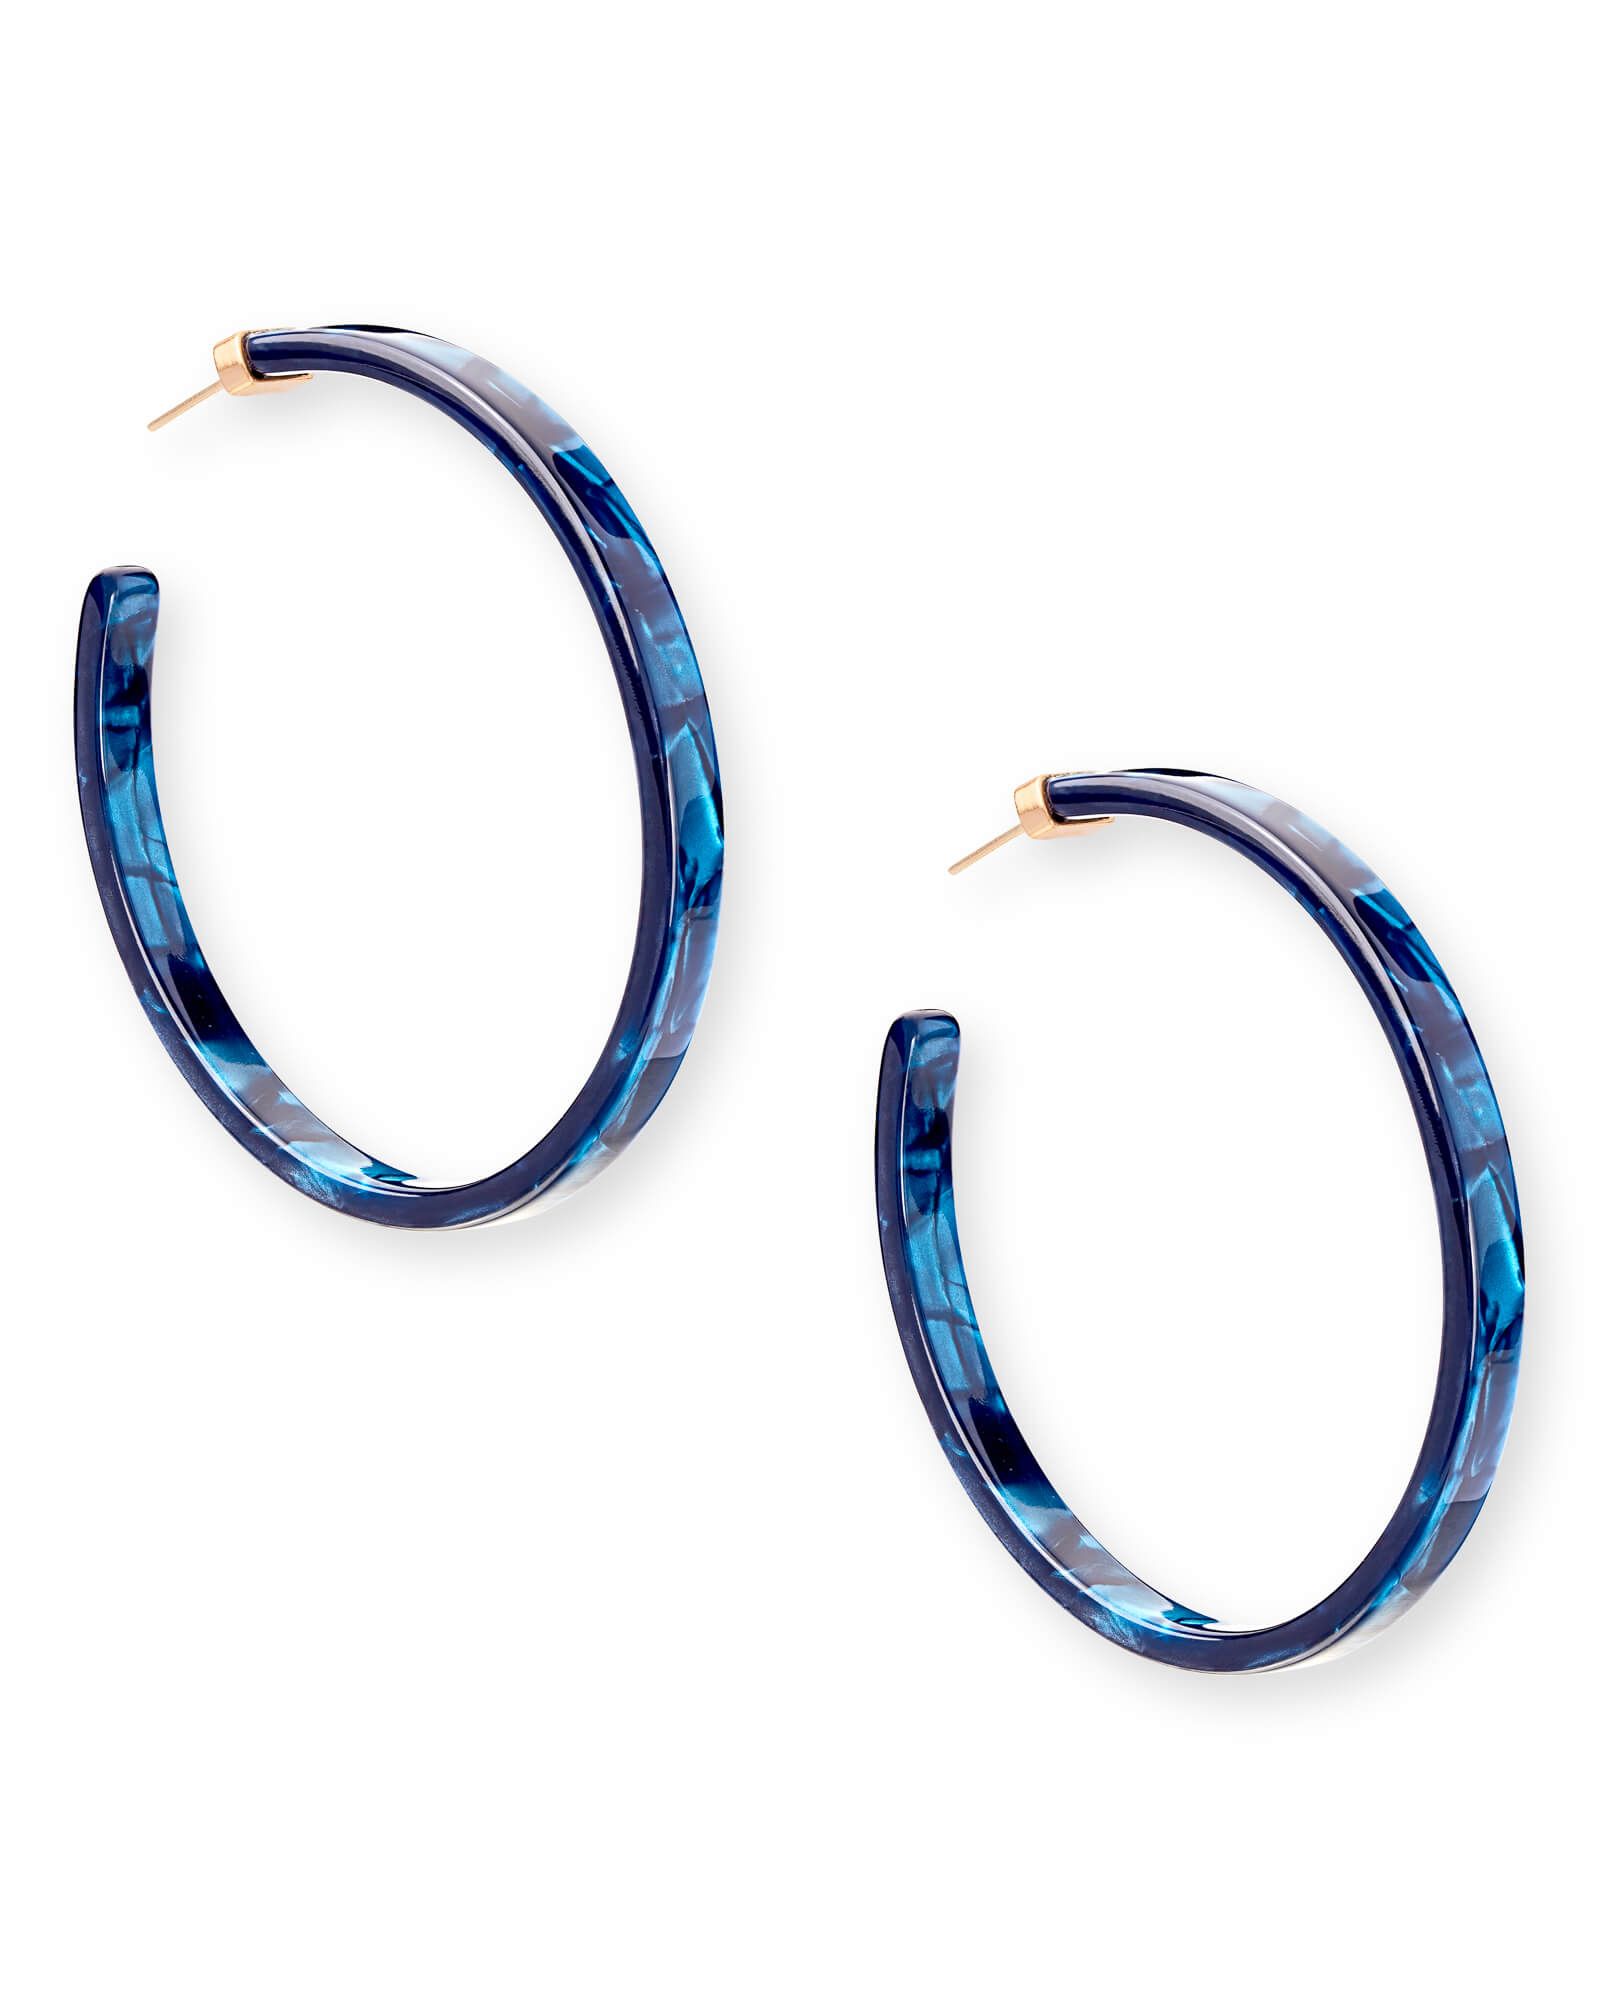 Kash Hoop Earrings in Navy Blue Acetate | Kendra Scott